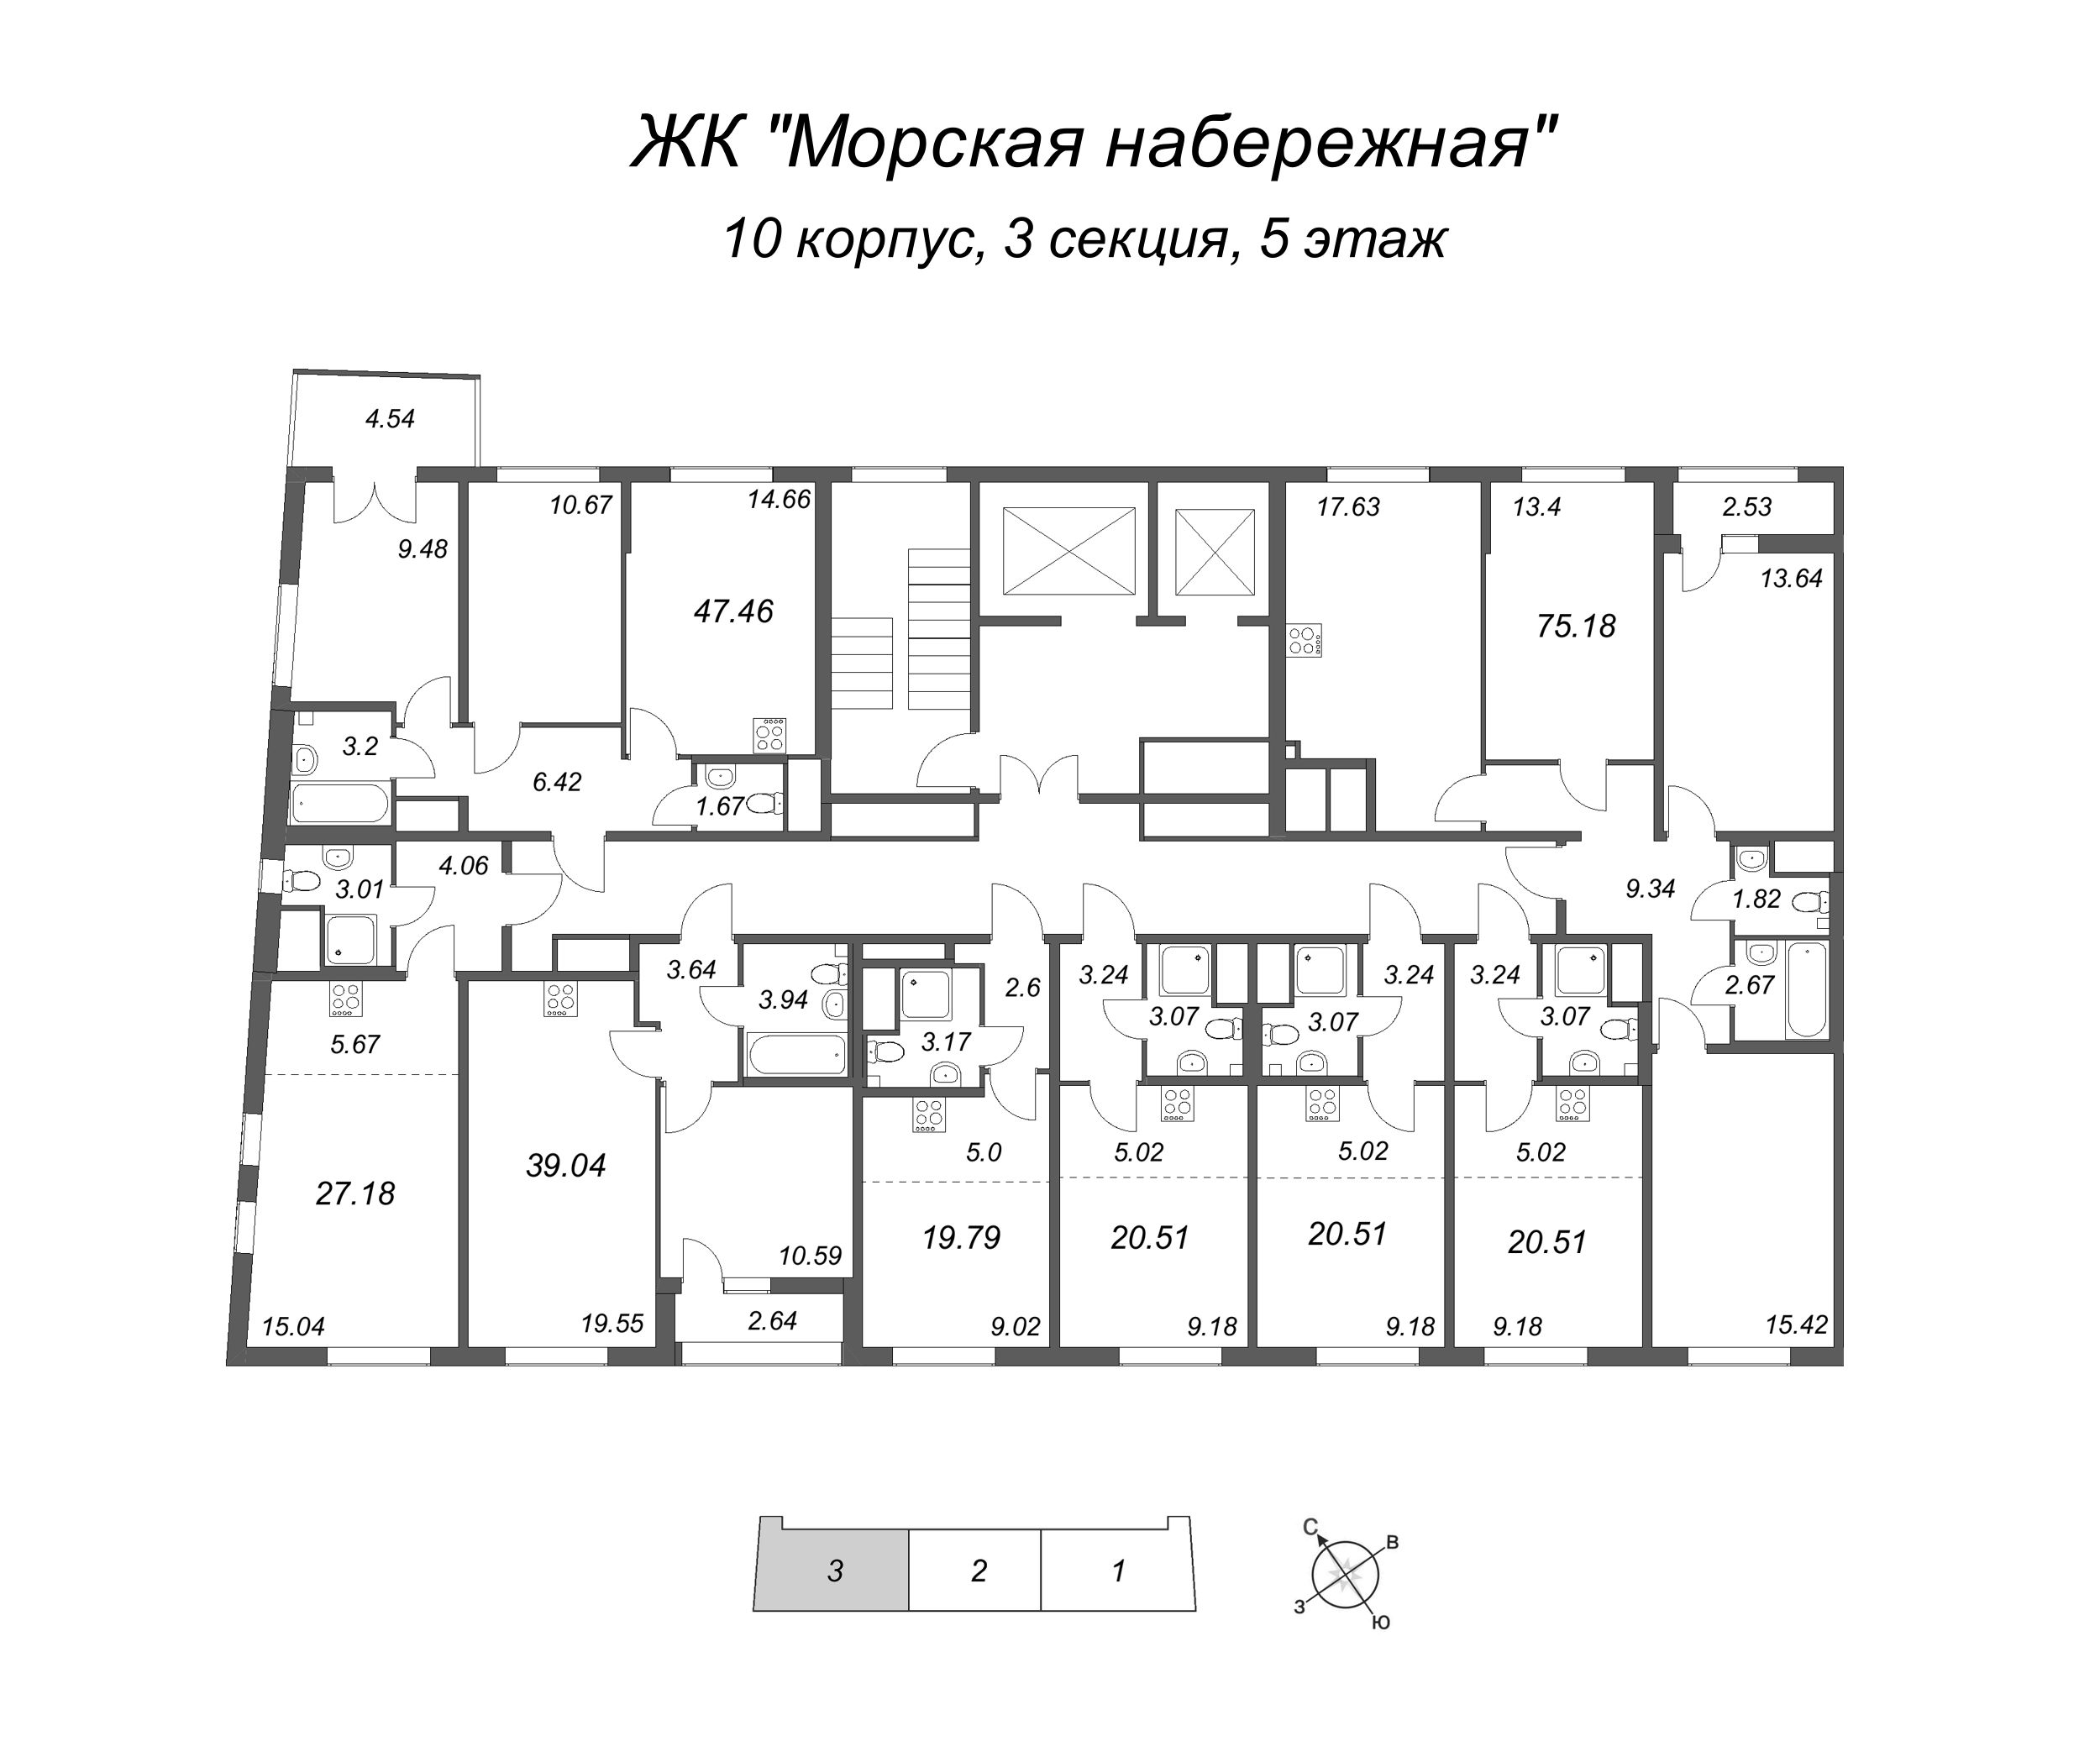 4-комнатная (Евро) квартира, 75.18 м² в ЖК "Морская набережная" - планировка этажа